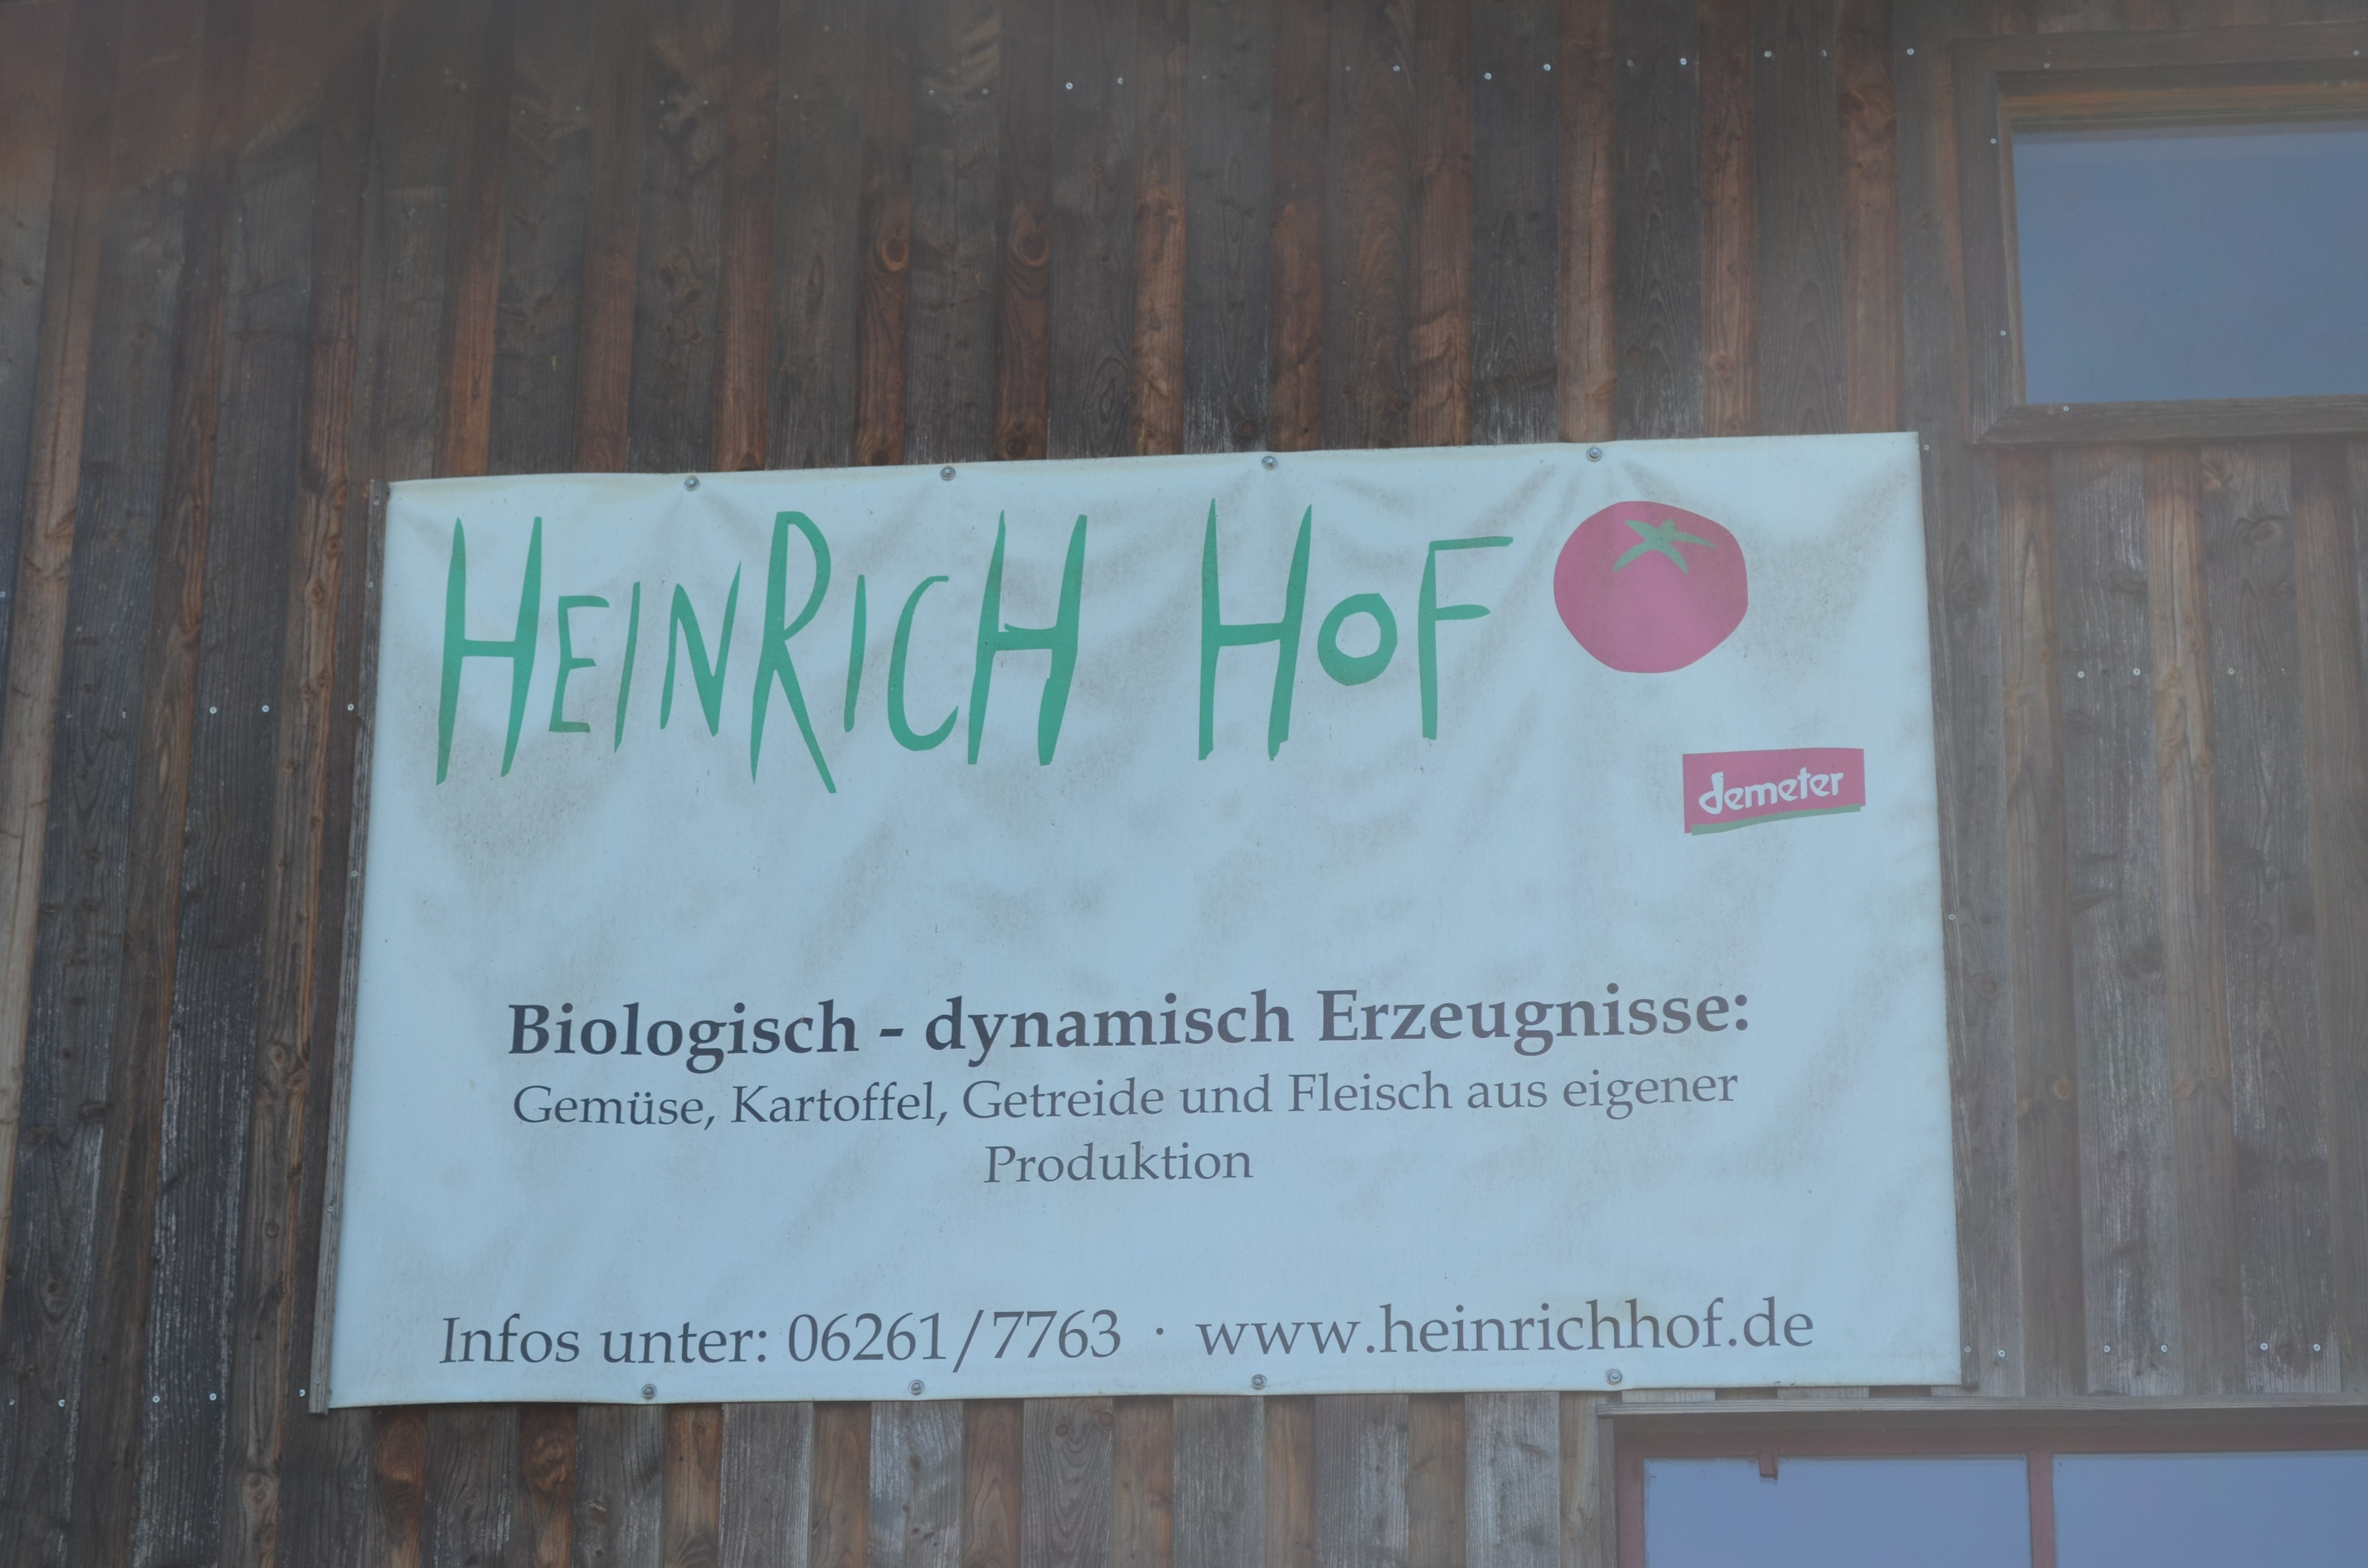 Heinrich Hof bioladen - biokiste